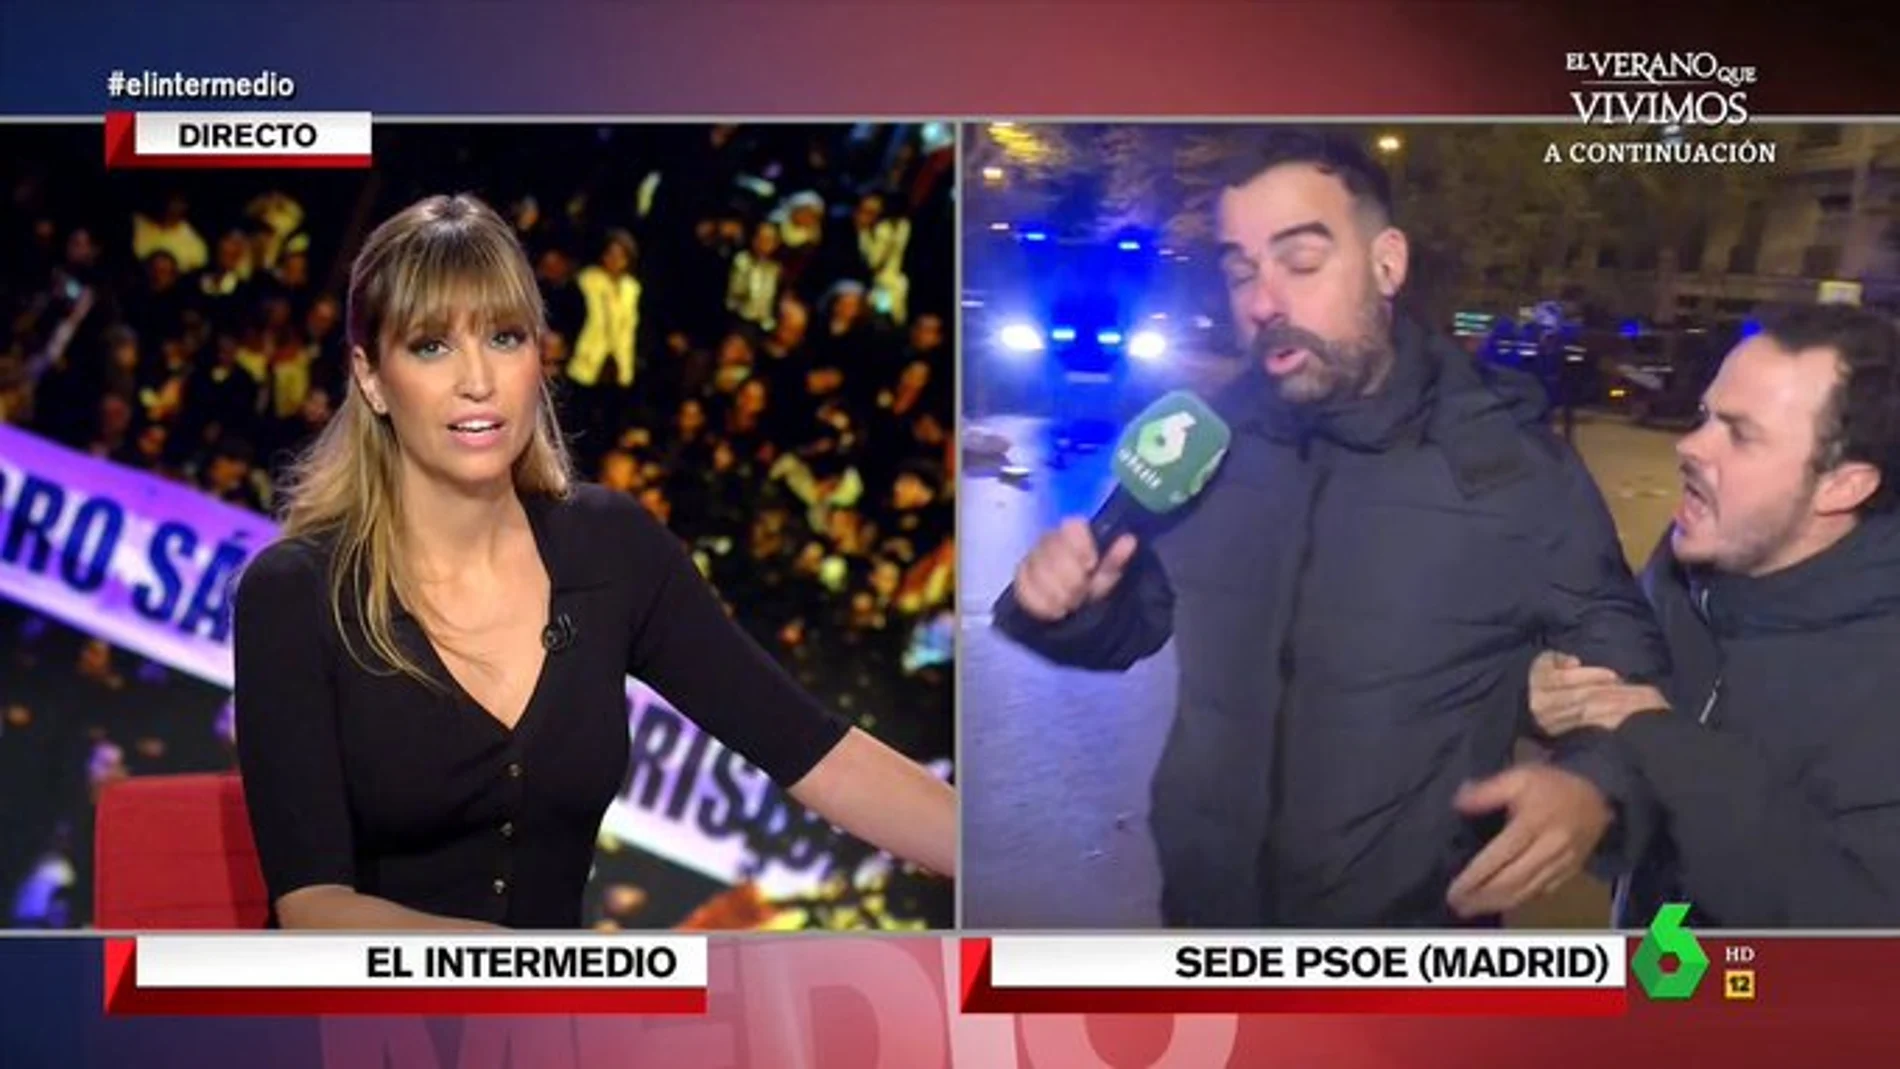 Un energúmeno increpa a un reportero de laSexta en su directo en 'El Intermedio': "¡Muertos de ETA!"